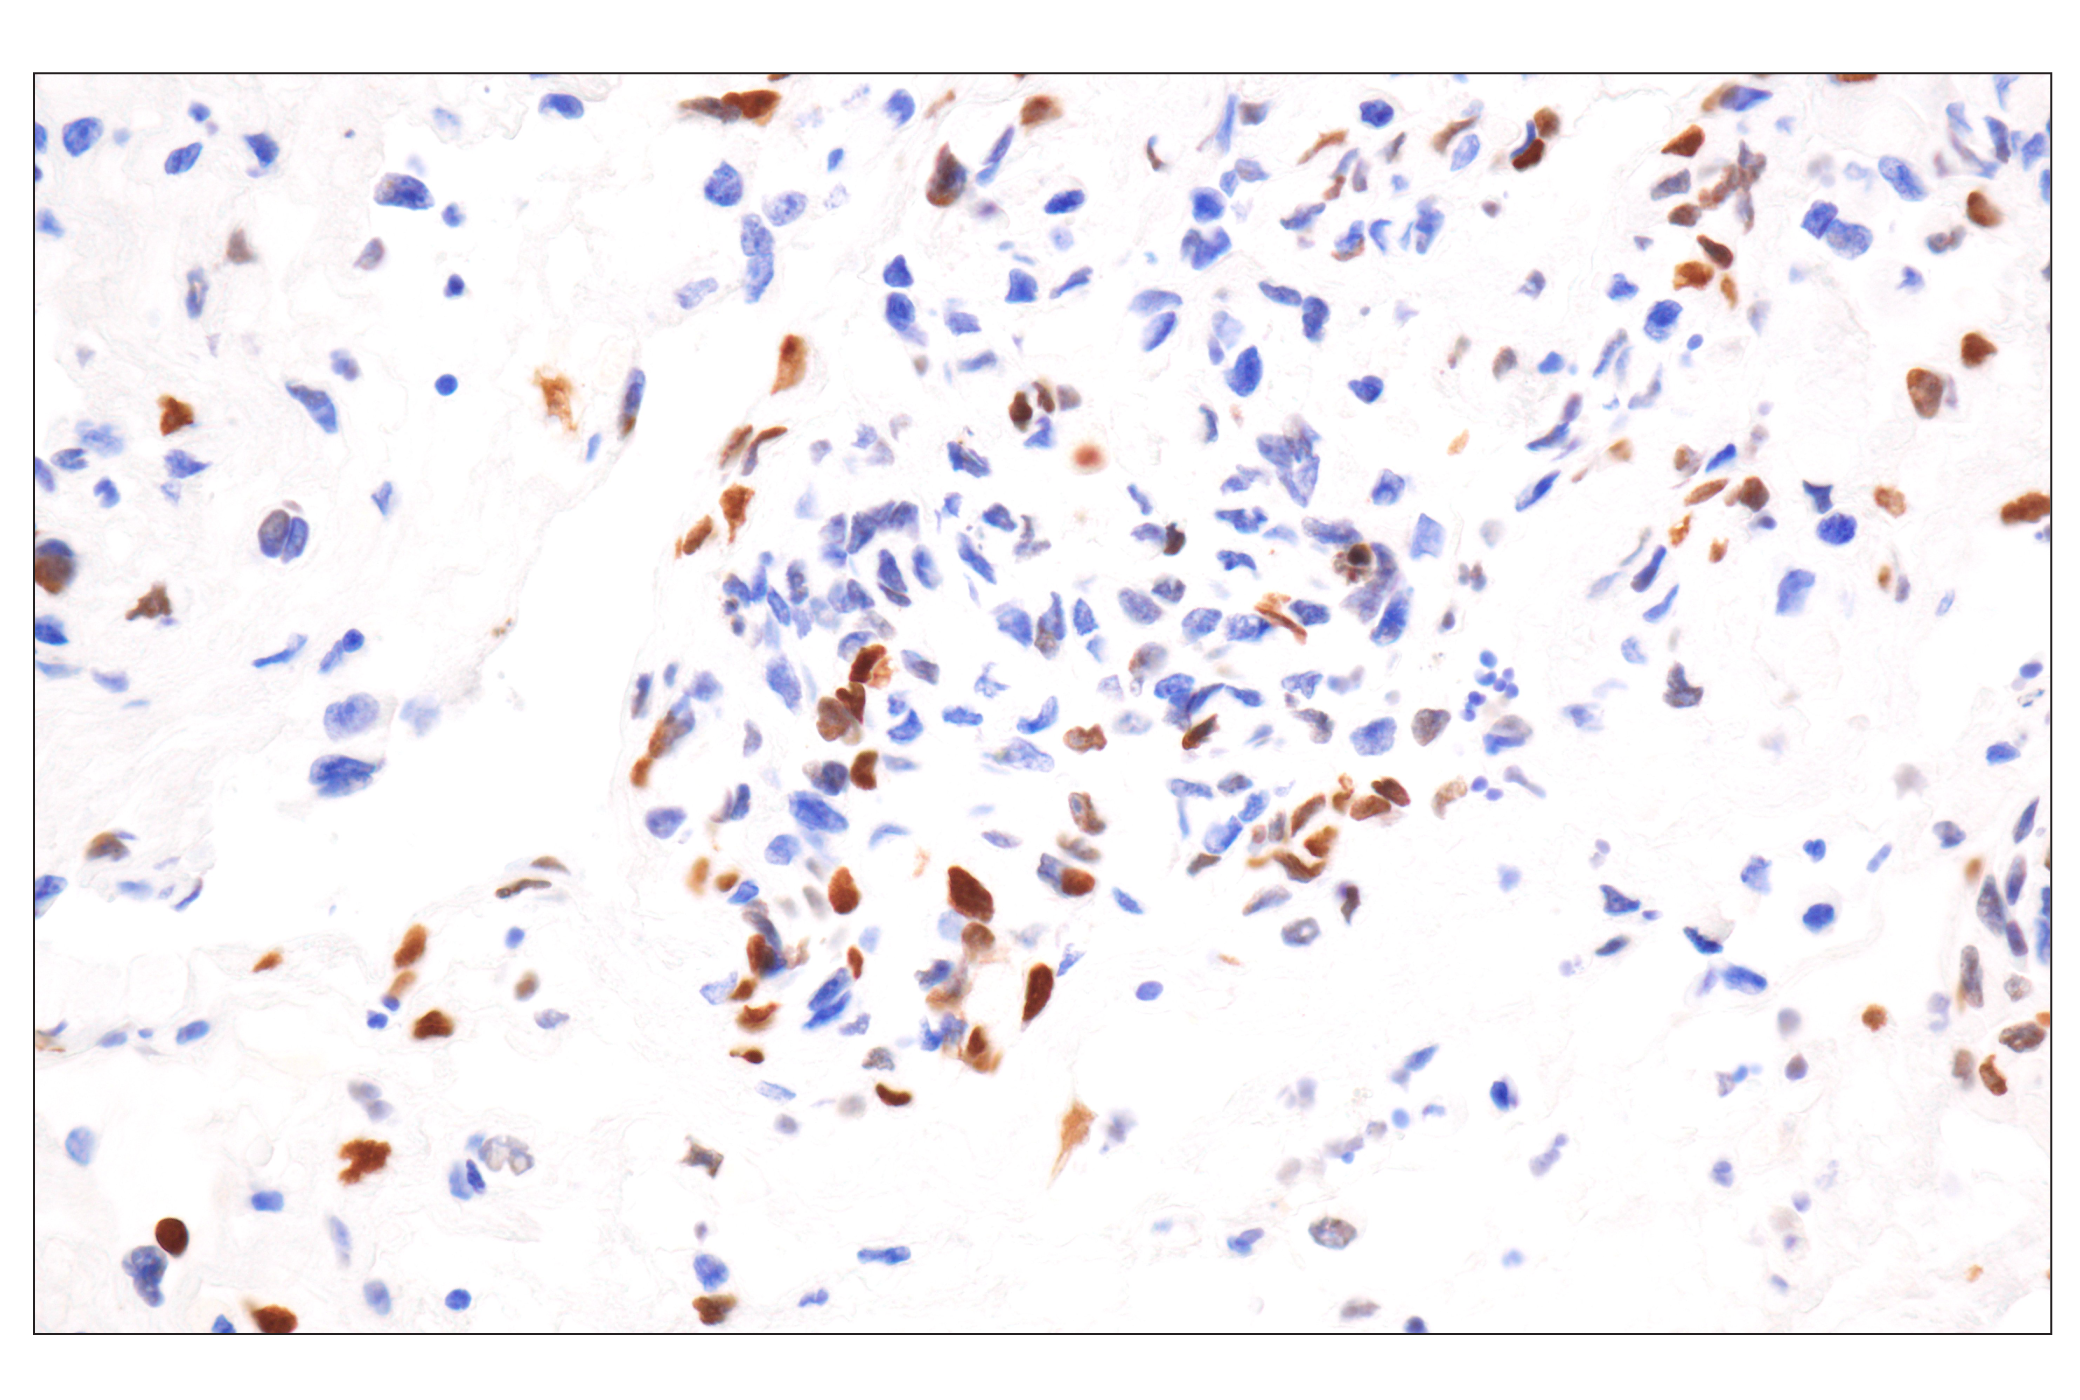  Image 11: UV Induced DNA Damage Response Antibody Sampler Kit